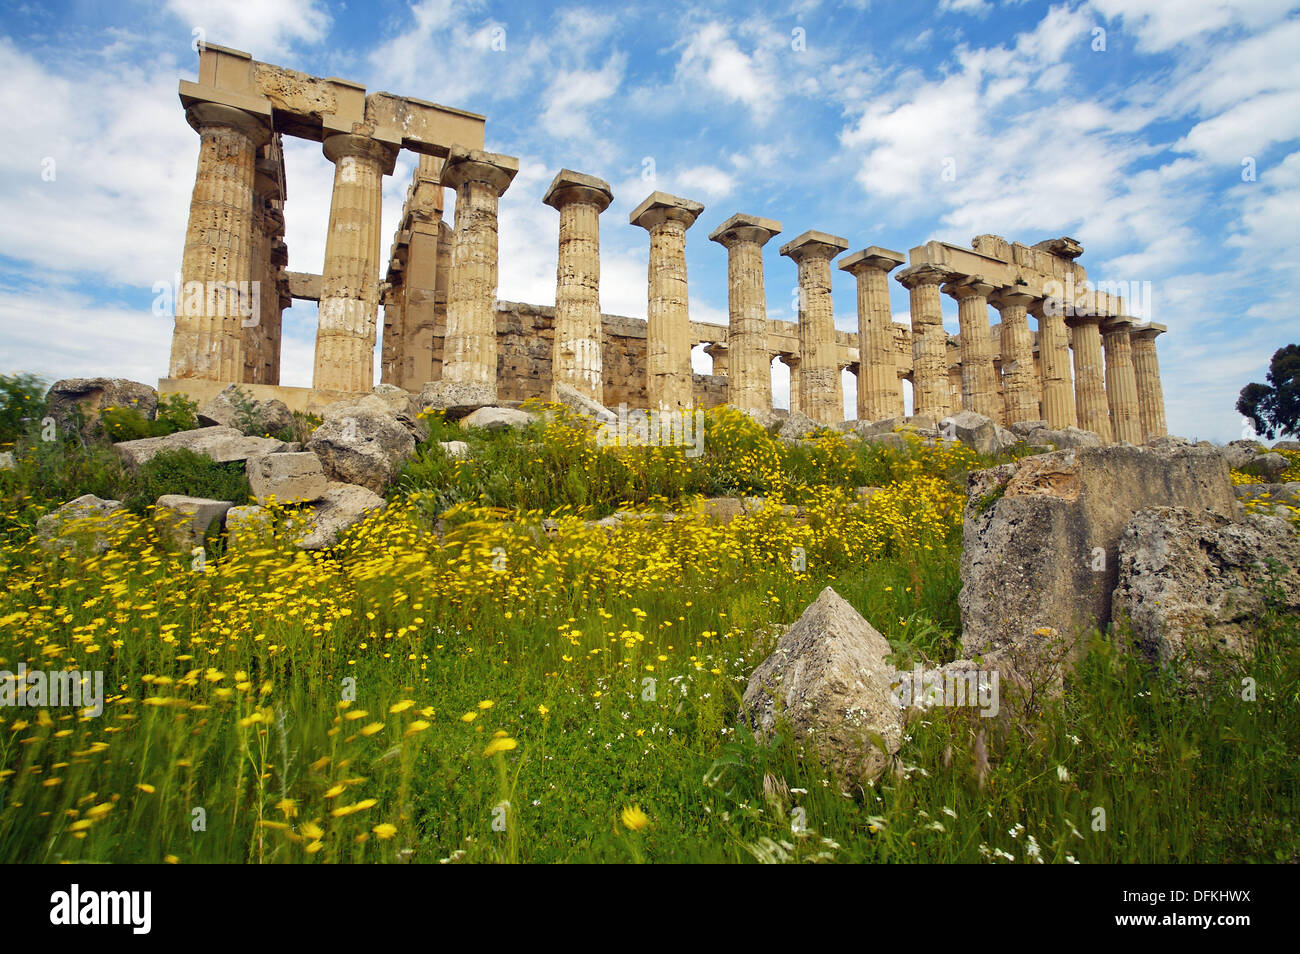 Rovine del tempio greco del VII secolo A.C. Provincia di Trapani, Selinunte, Sicilia, Italia Foto Stock